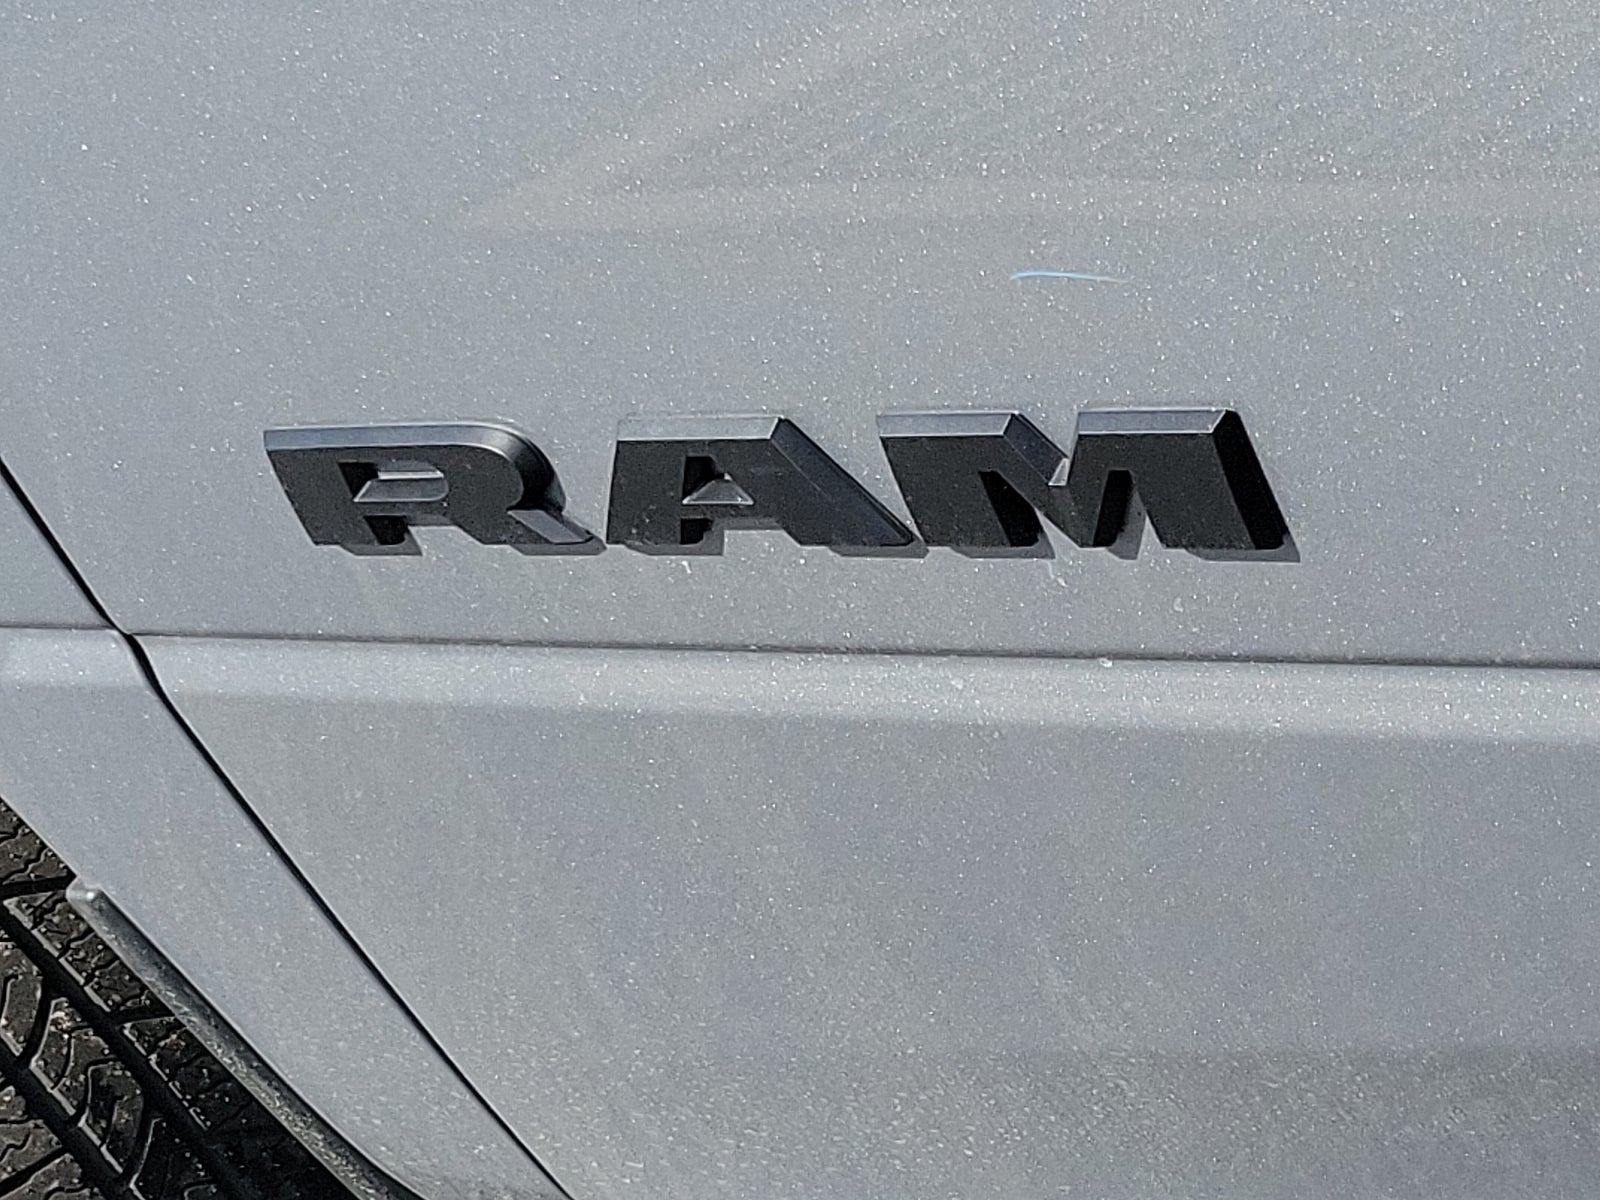 2024 RAM 3500 Big Horn